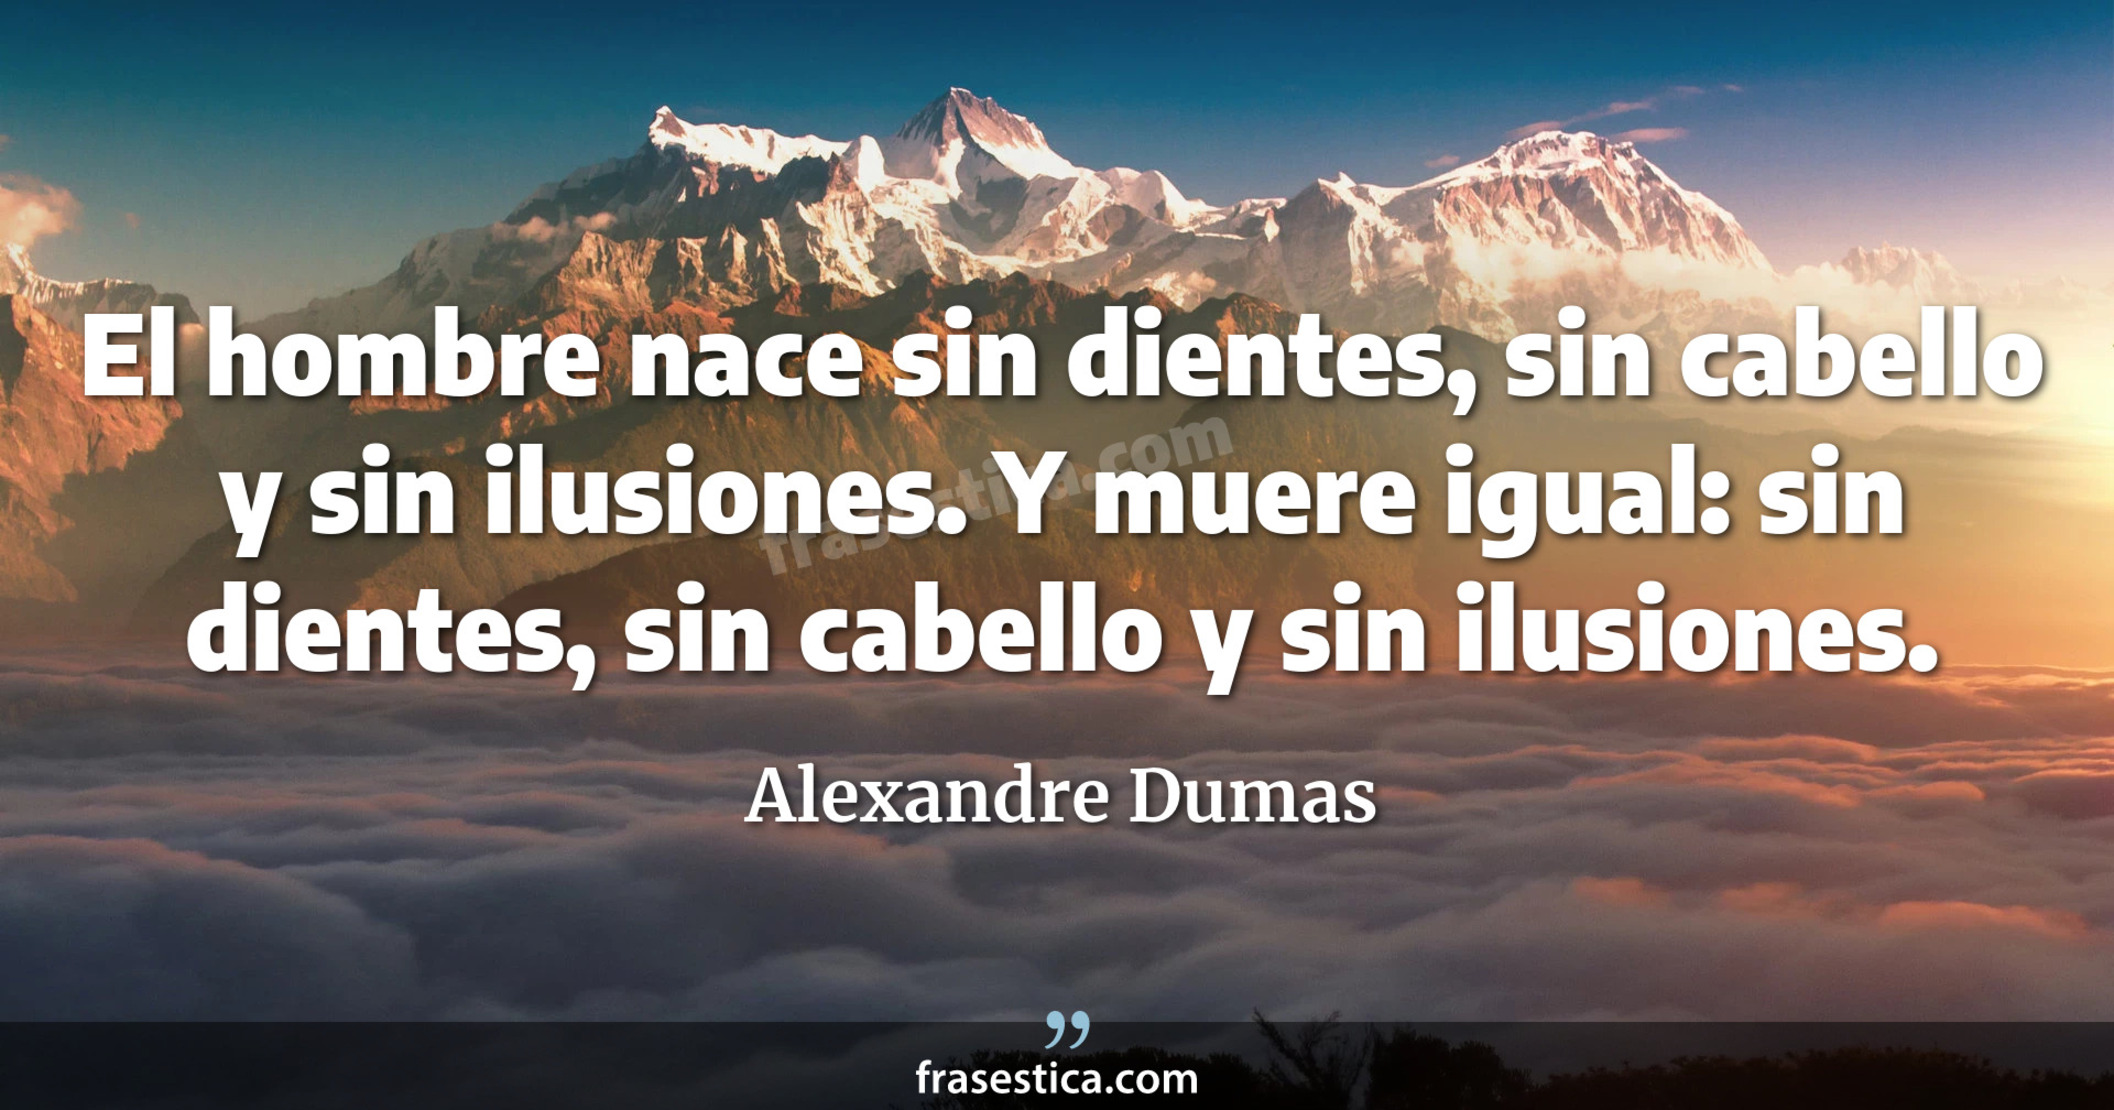 El hombre nace sin dientes, sin cabello y sin ilusiones. Y muere igual: sin dientes, sin cabello y sin ilusiones. - Alexandre Dumas